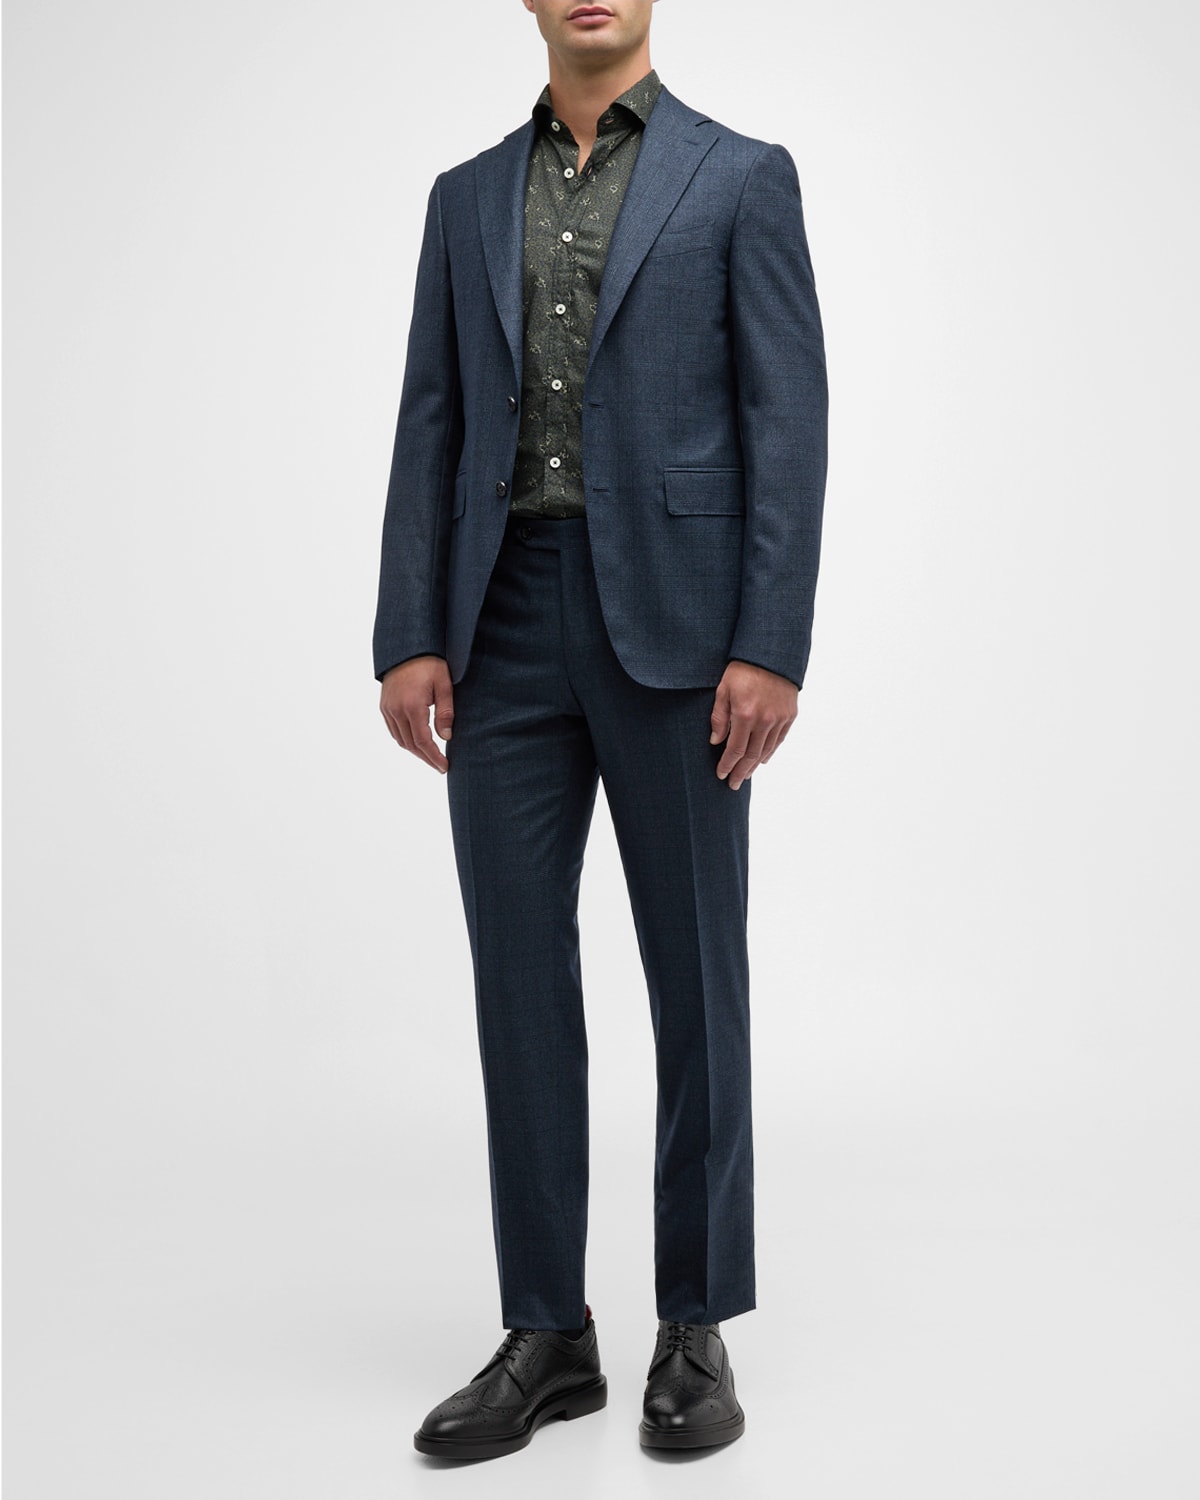 Canali Men's Plaid Wool Suit | Neiman Marcus